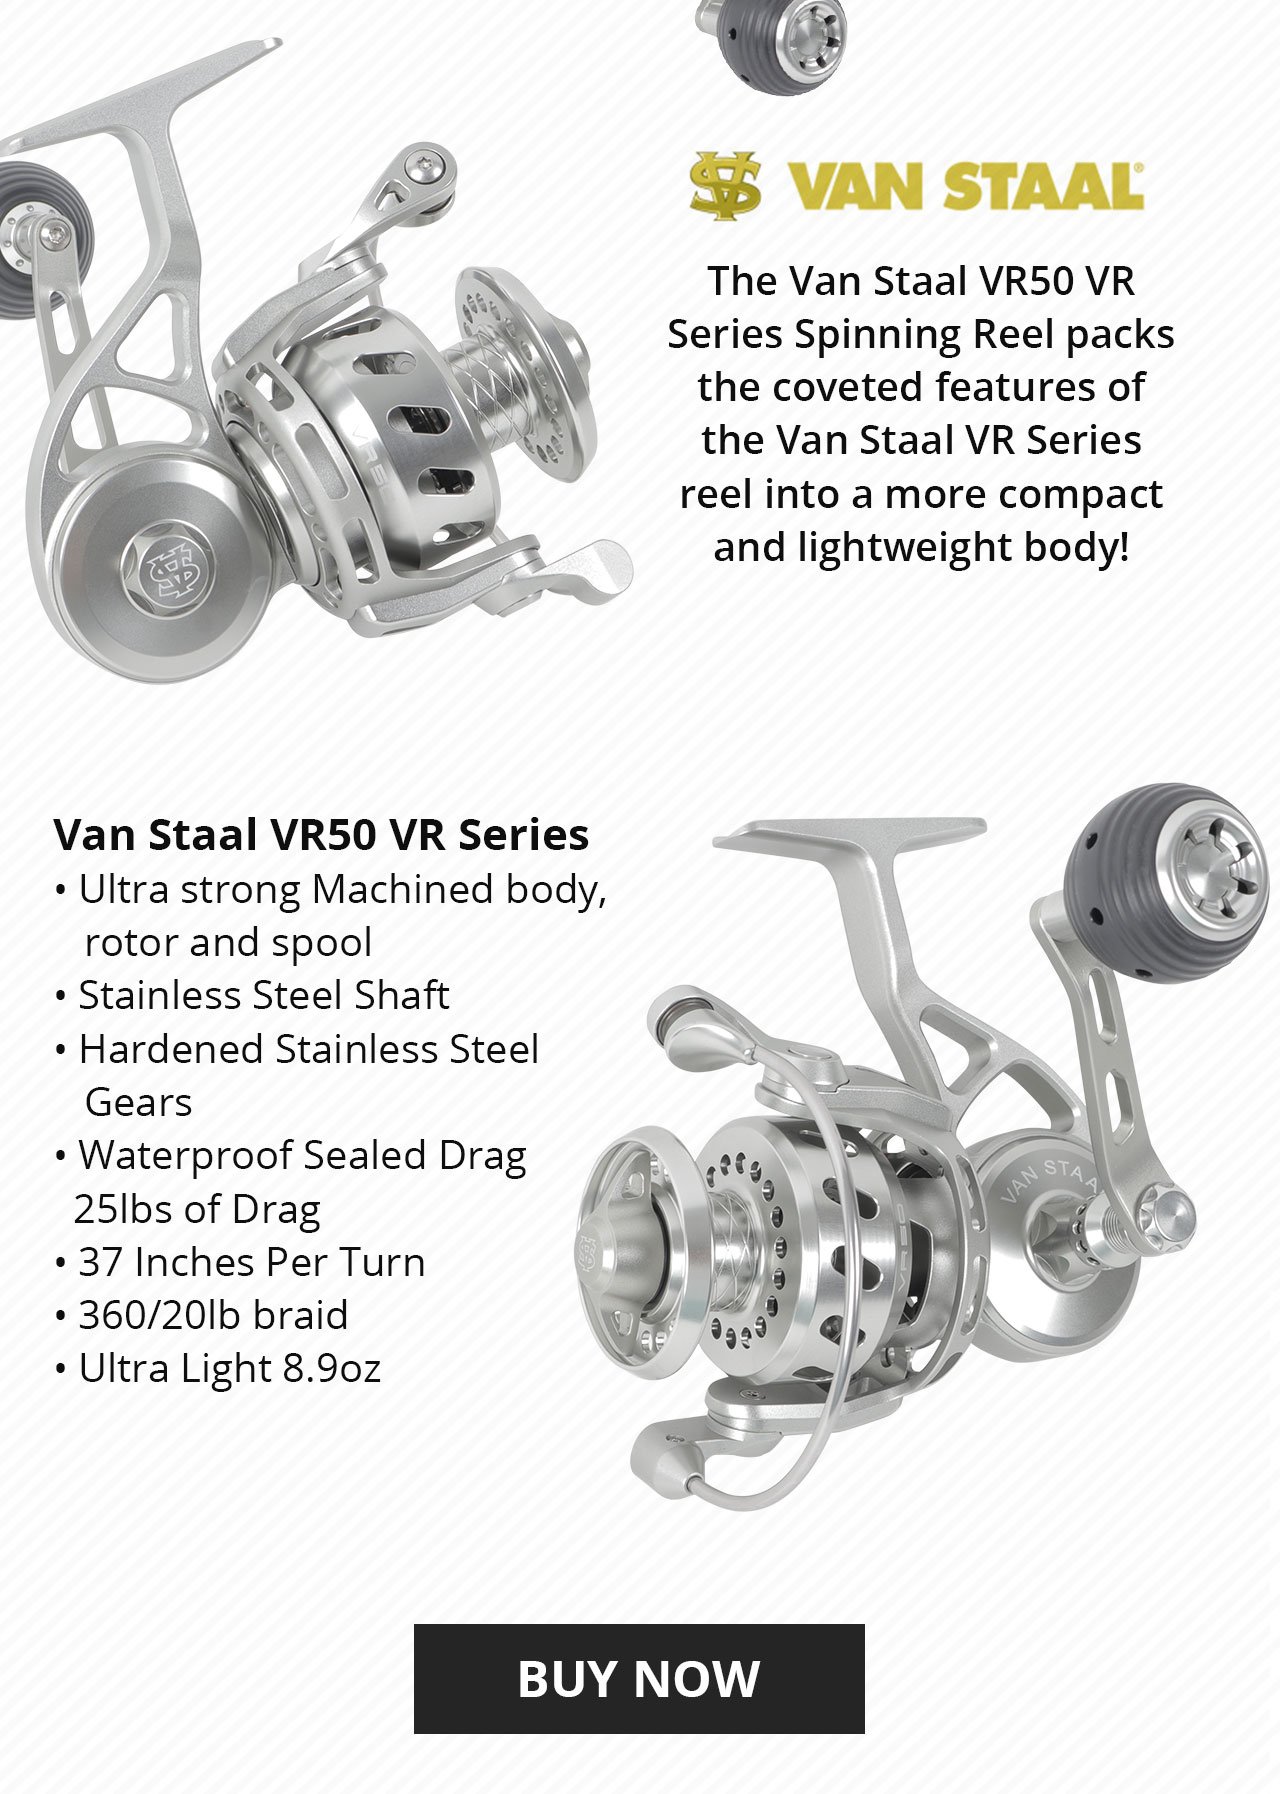 Van Staal VR 50 Series Spinning Reel for sale online